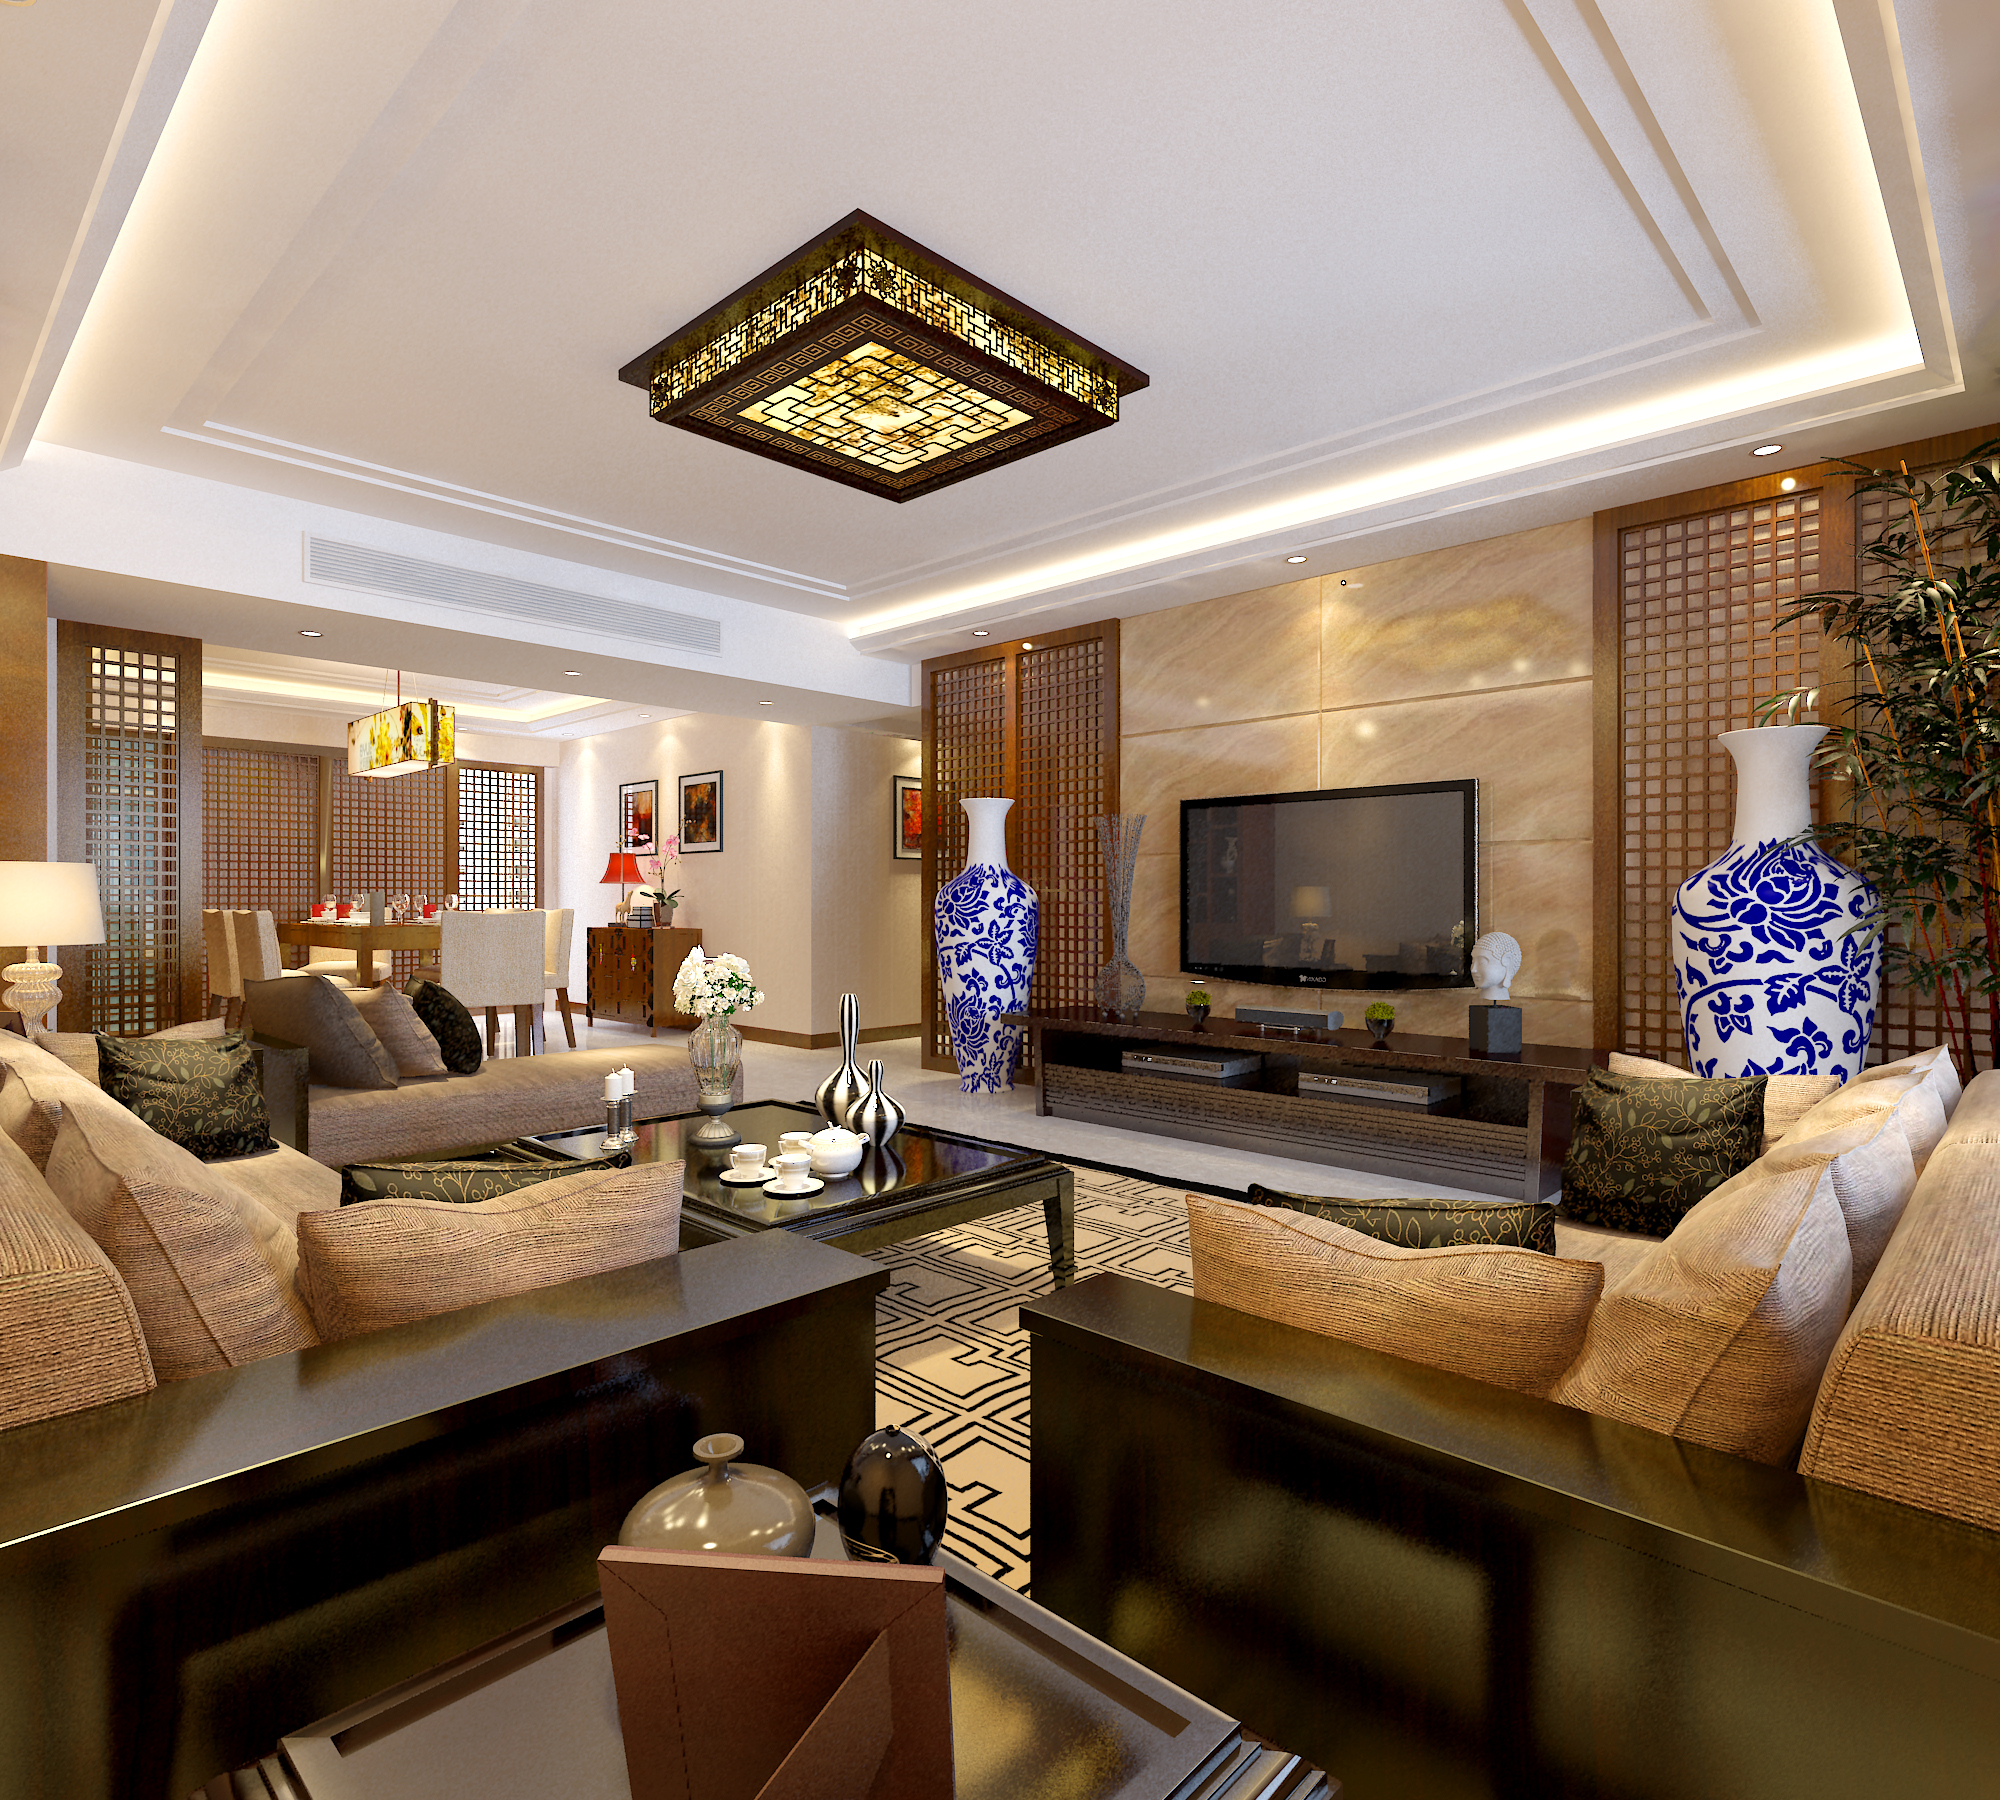 四室 新中式 中式 旧房改造 客厅图片来自柠檬树装饰在新中式的分享